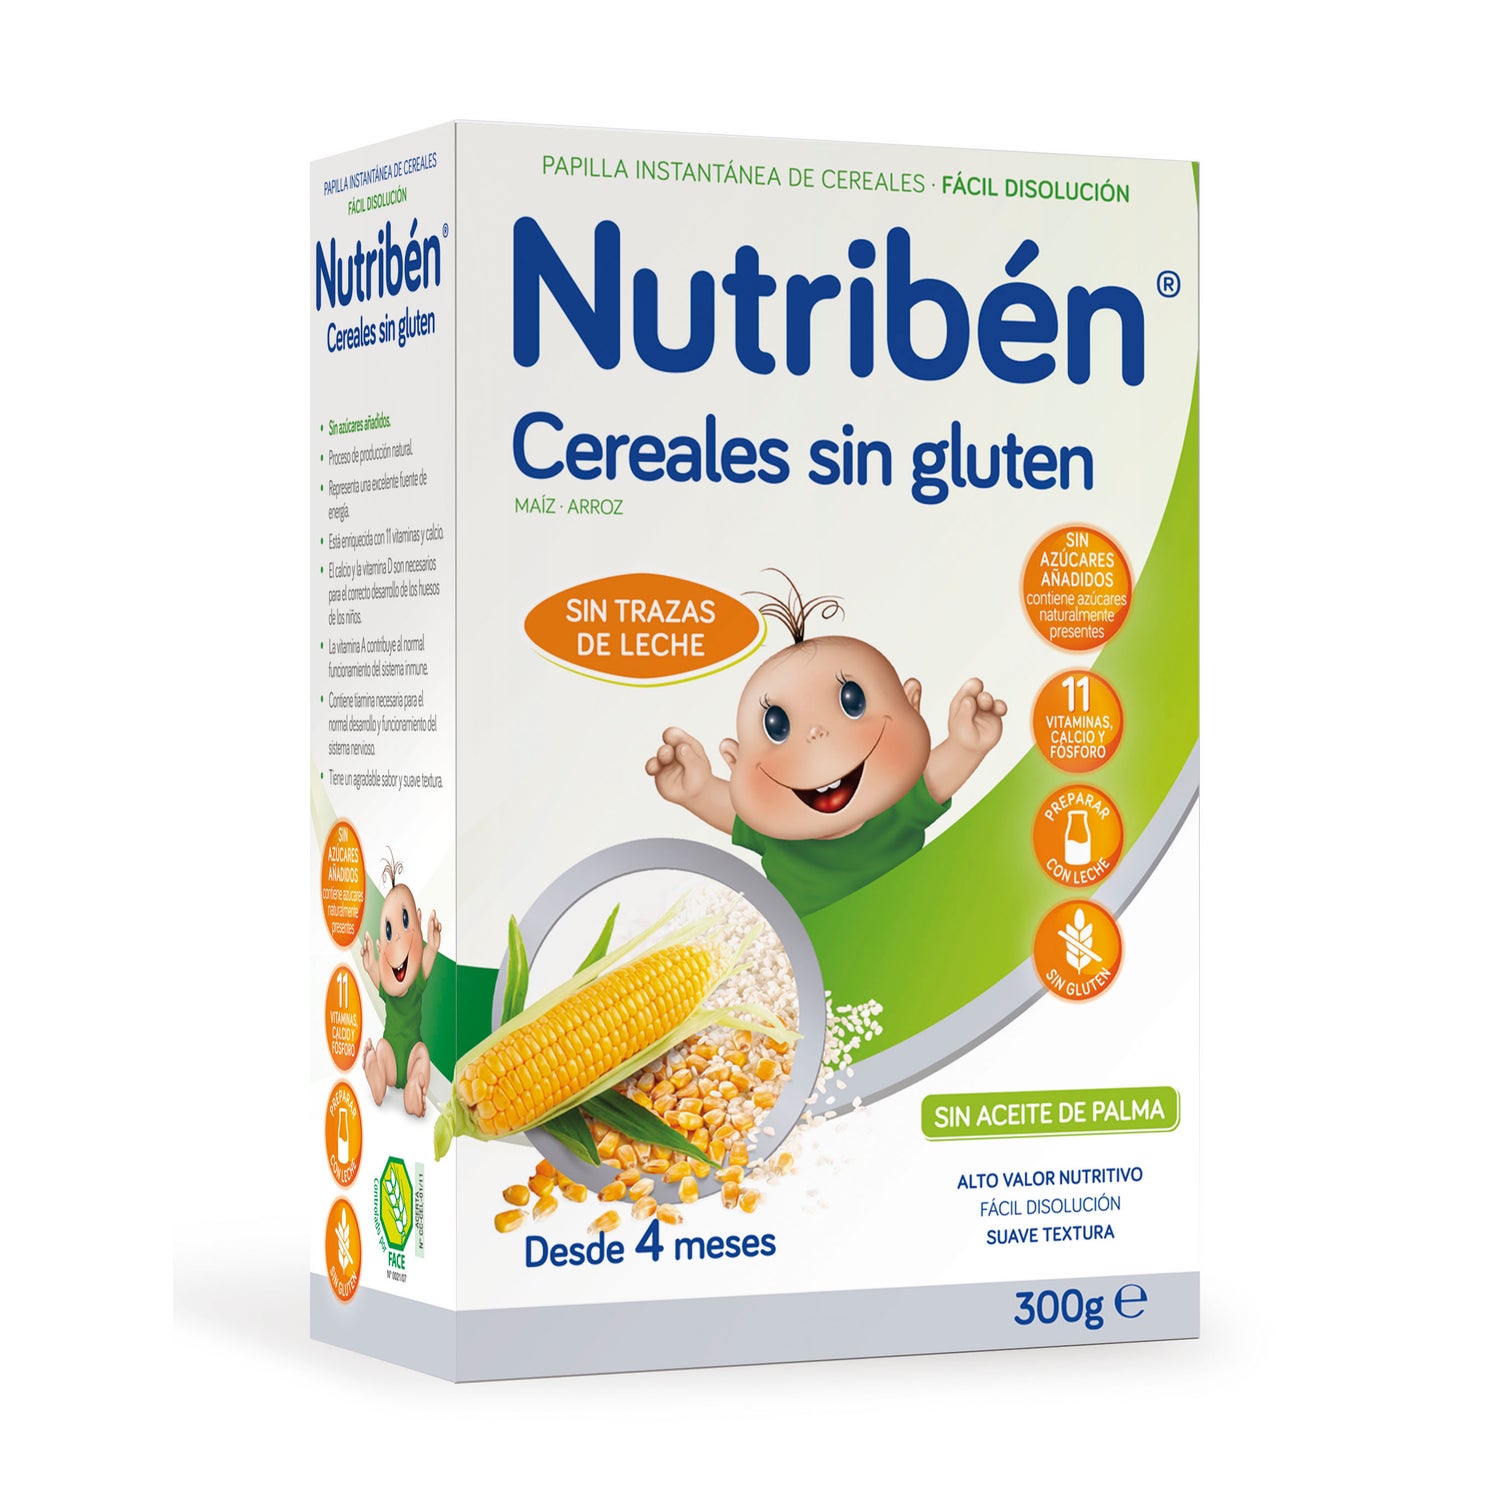 Nutribén Innova Cereales sin gluten, papilla de introducción a los cereales